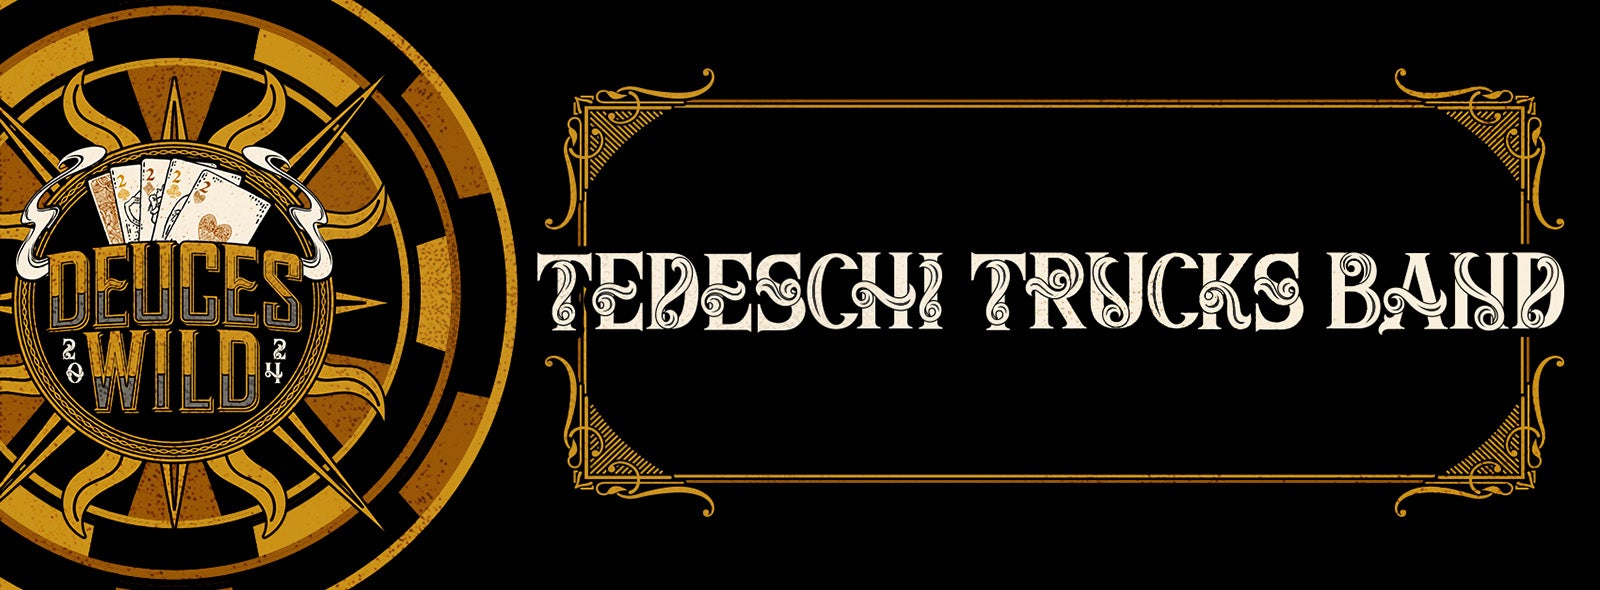 Tedeschi Trucks Band